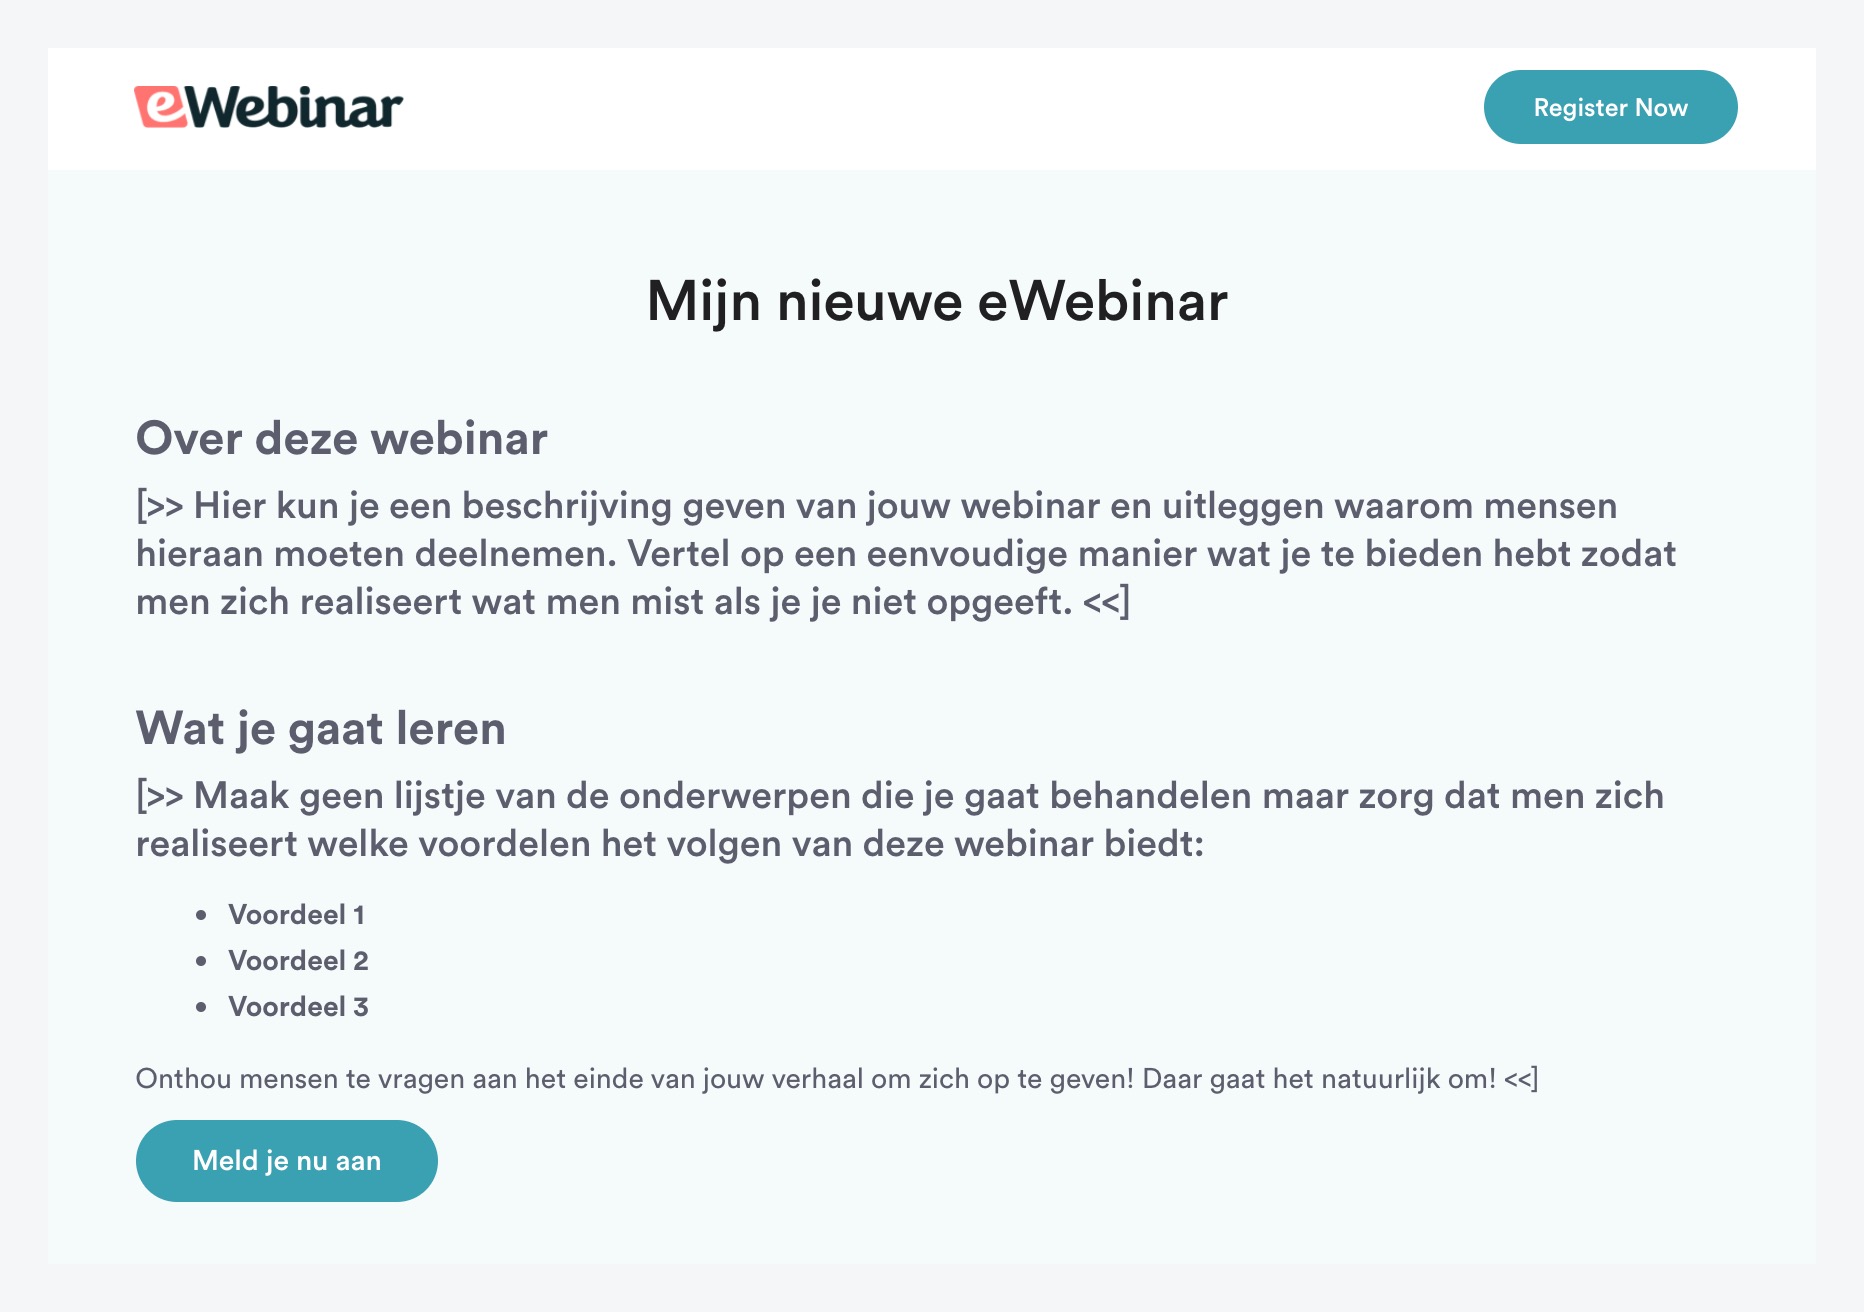 Página de registro en la plantilla estándar de eWebinar en holandés